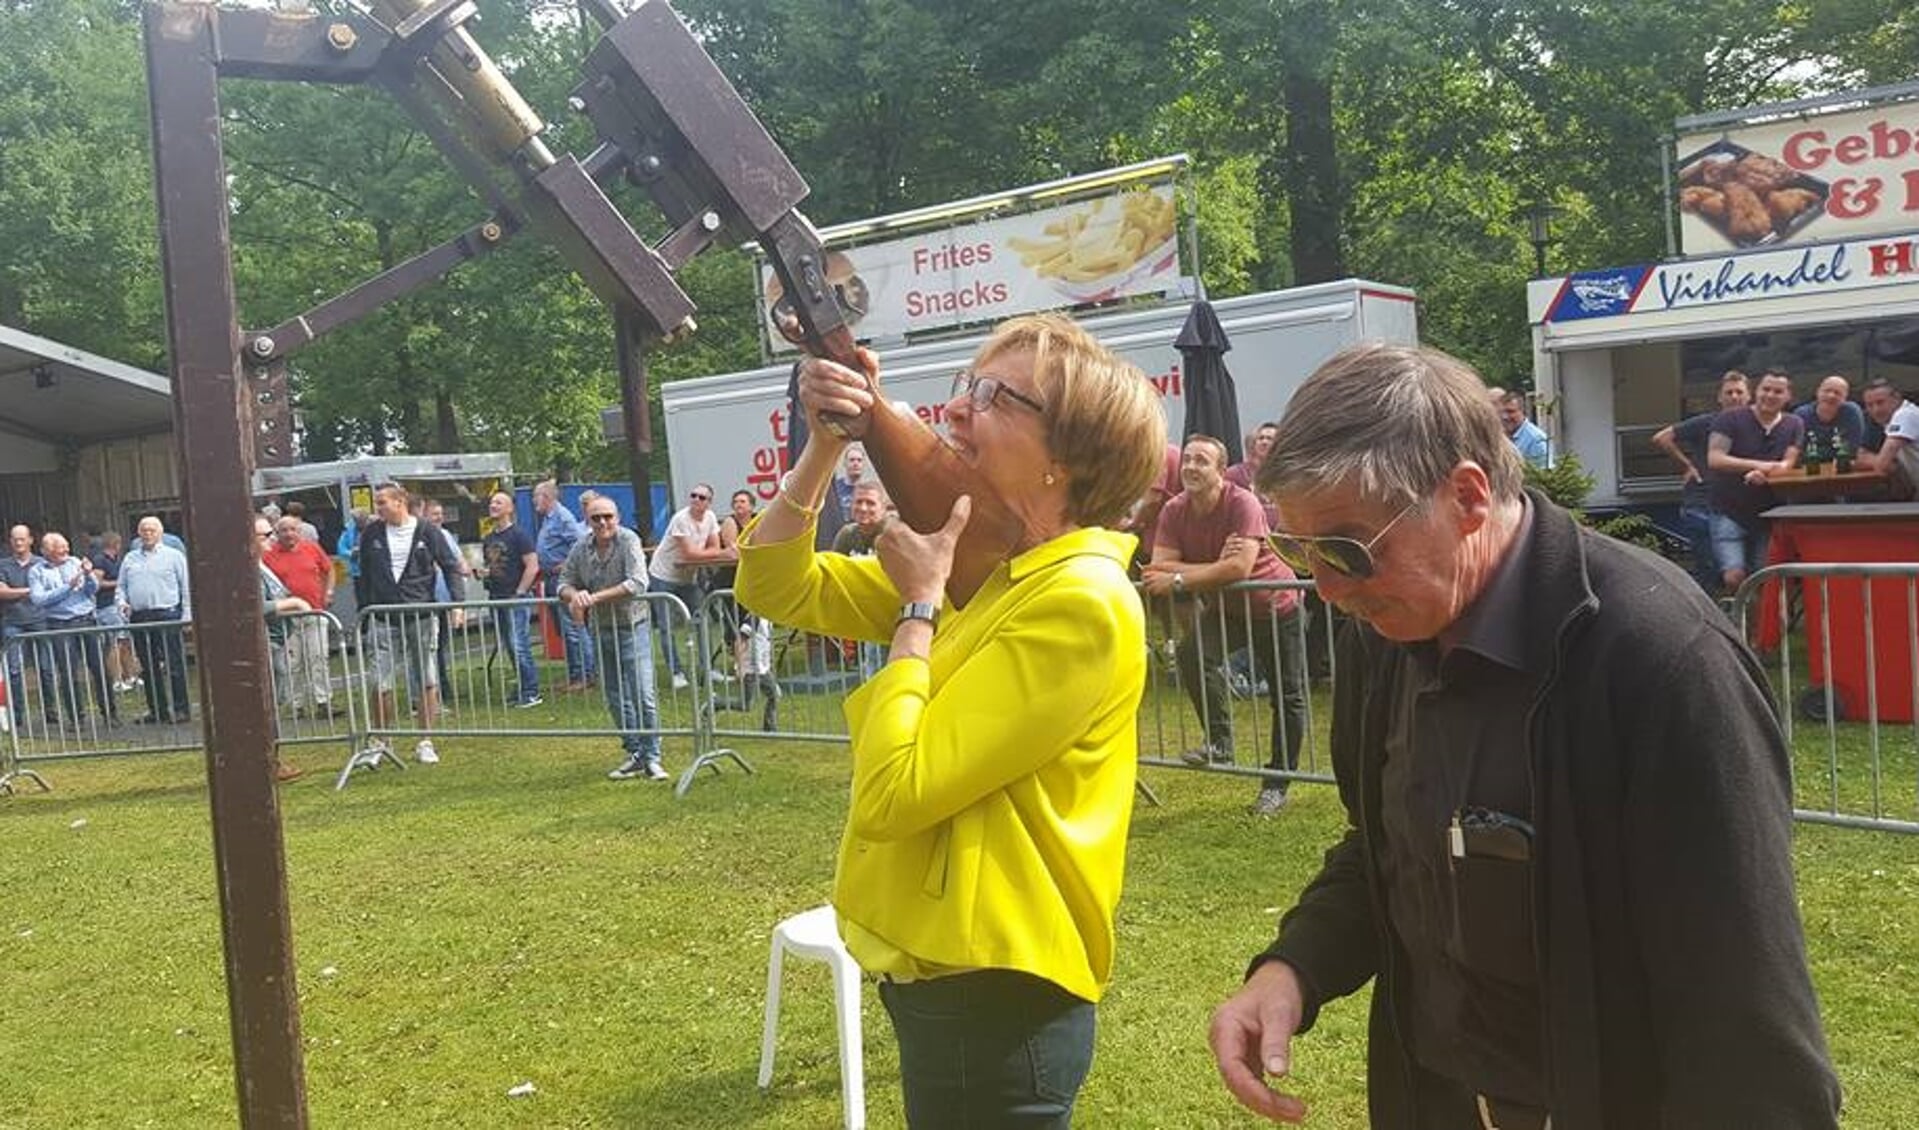 Een Koningin bij het vogelschieten dit jaar? Hier schiet Burgemeester Bronsvoort, uit hoofde van haar functie. Foto: PR